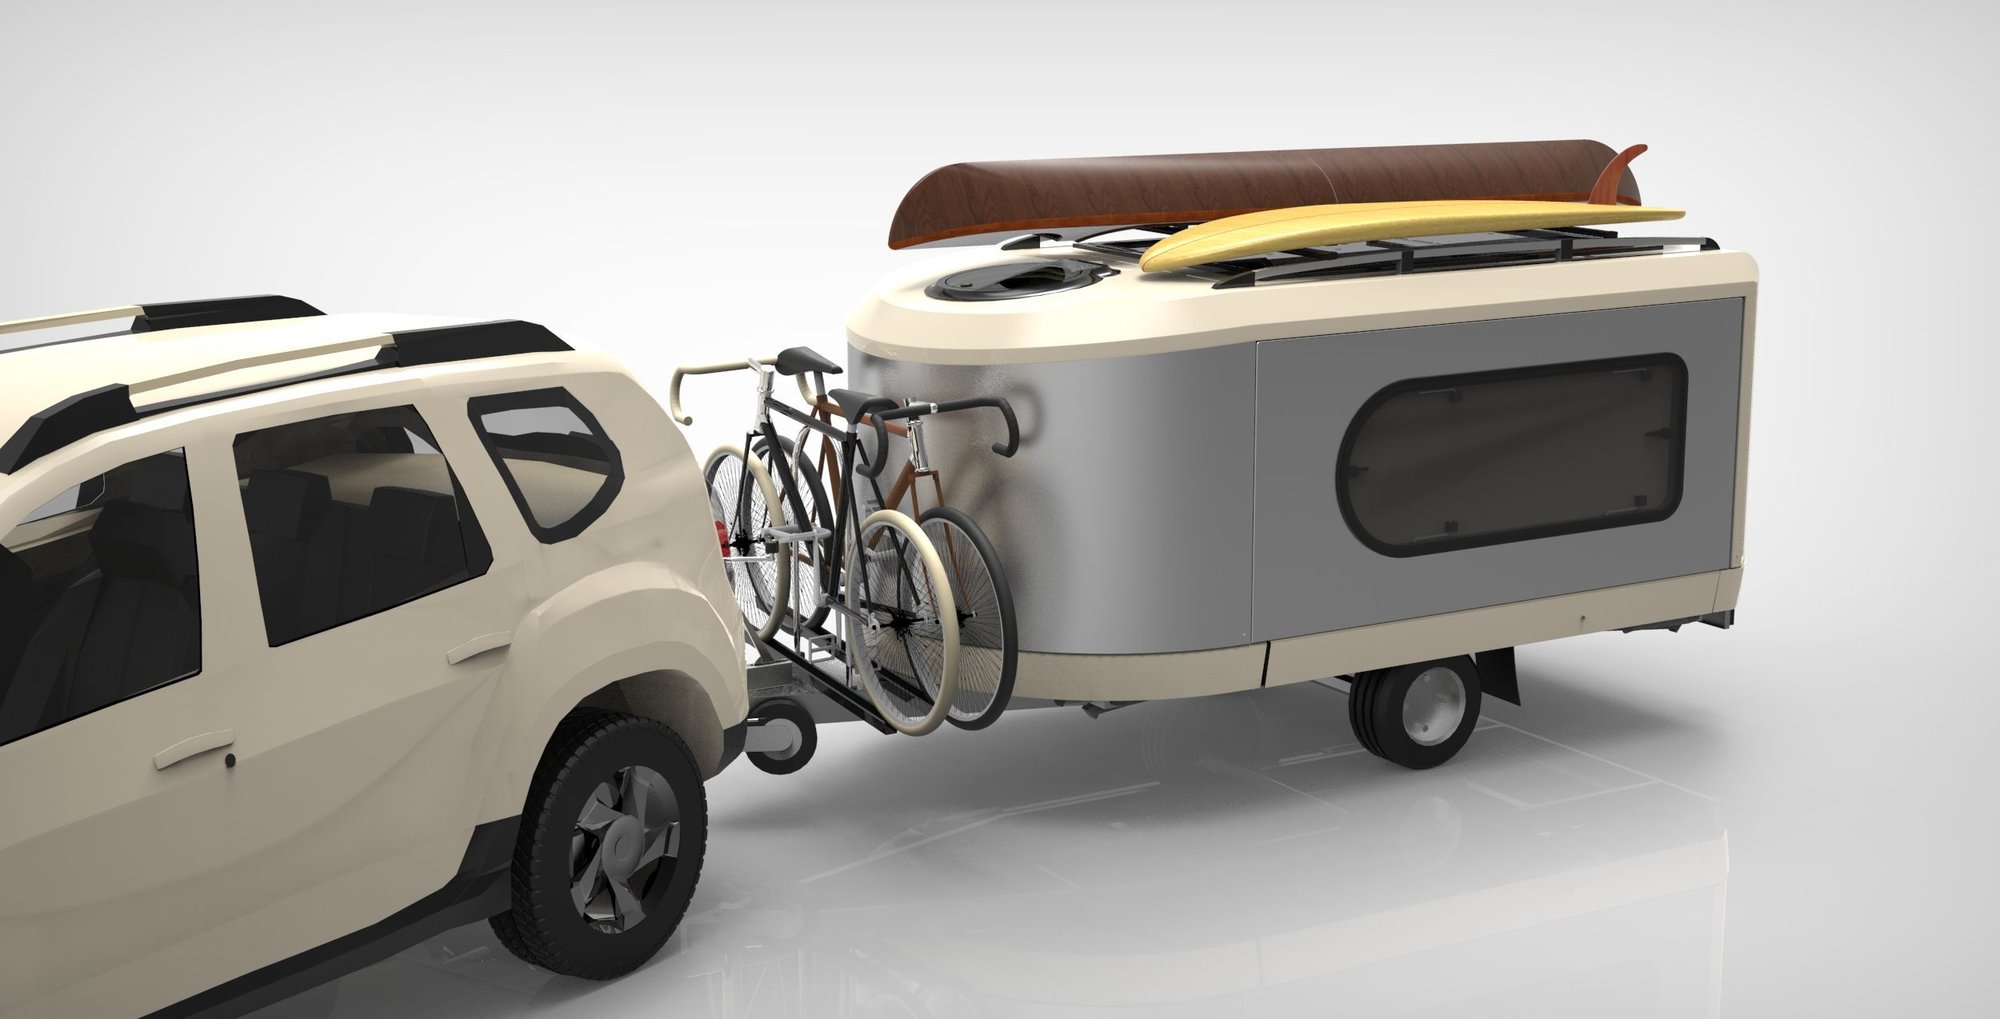 Nový francouzský karavan Tipoon ukrývá obrovský vnitřní prostor